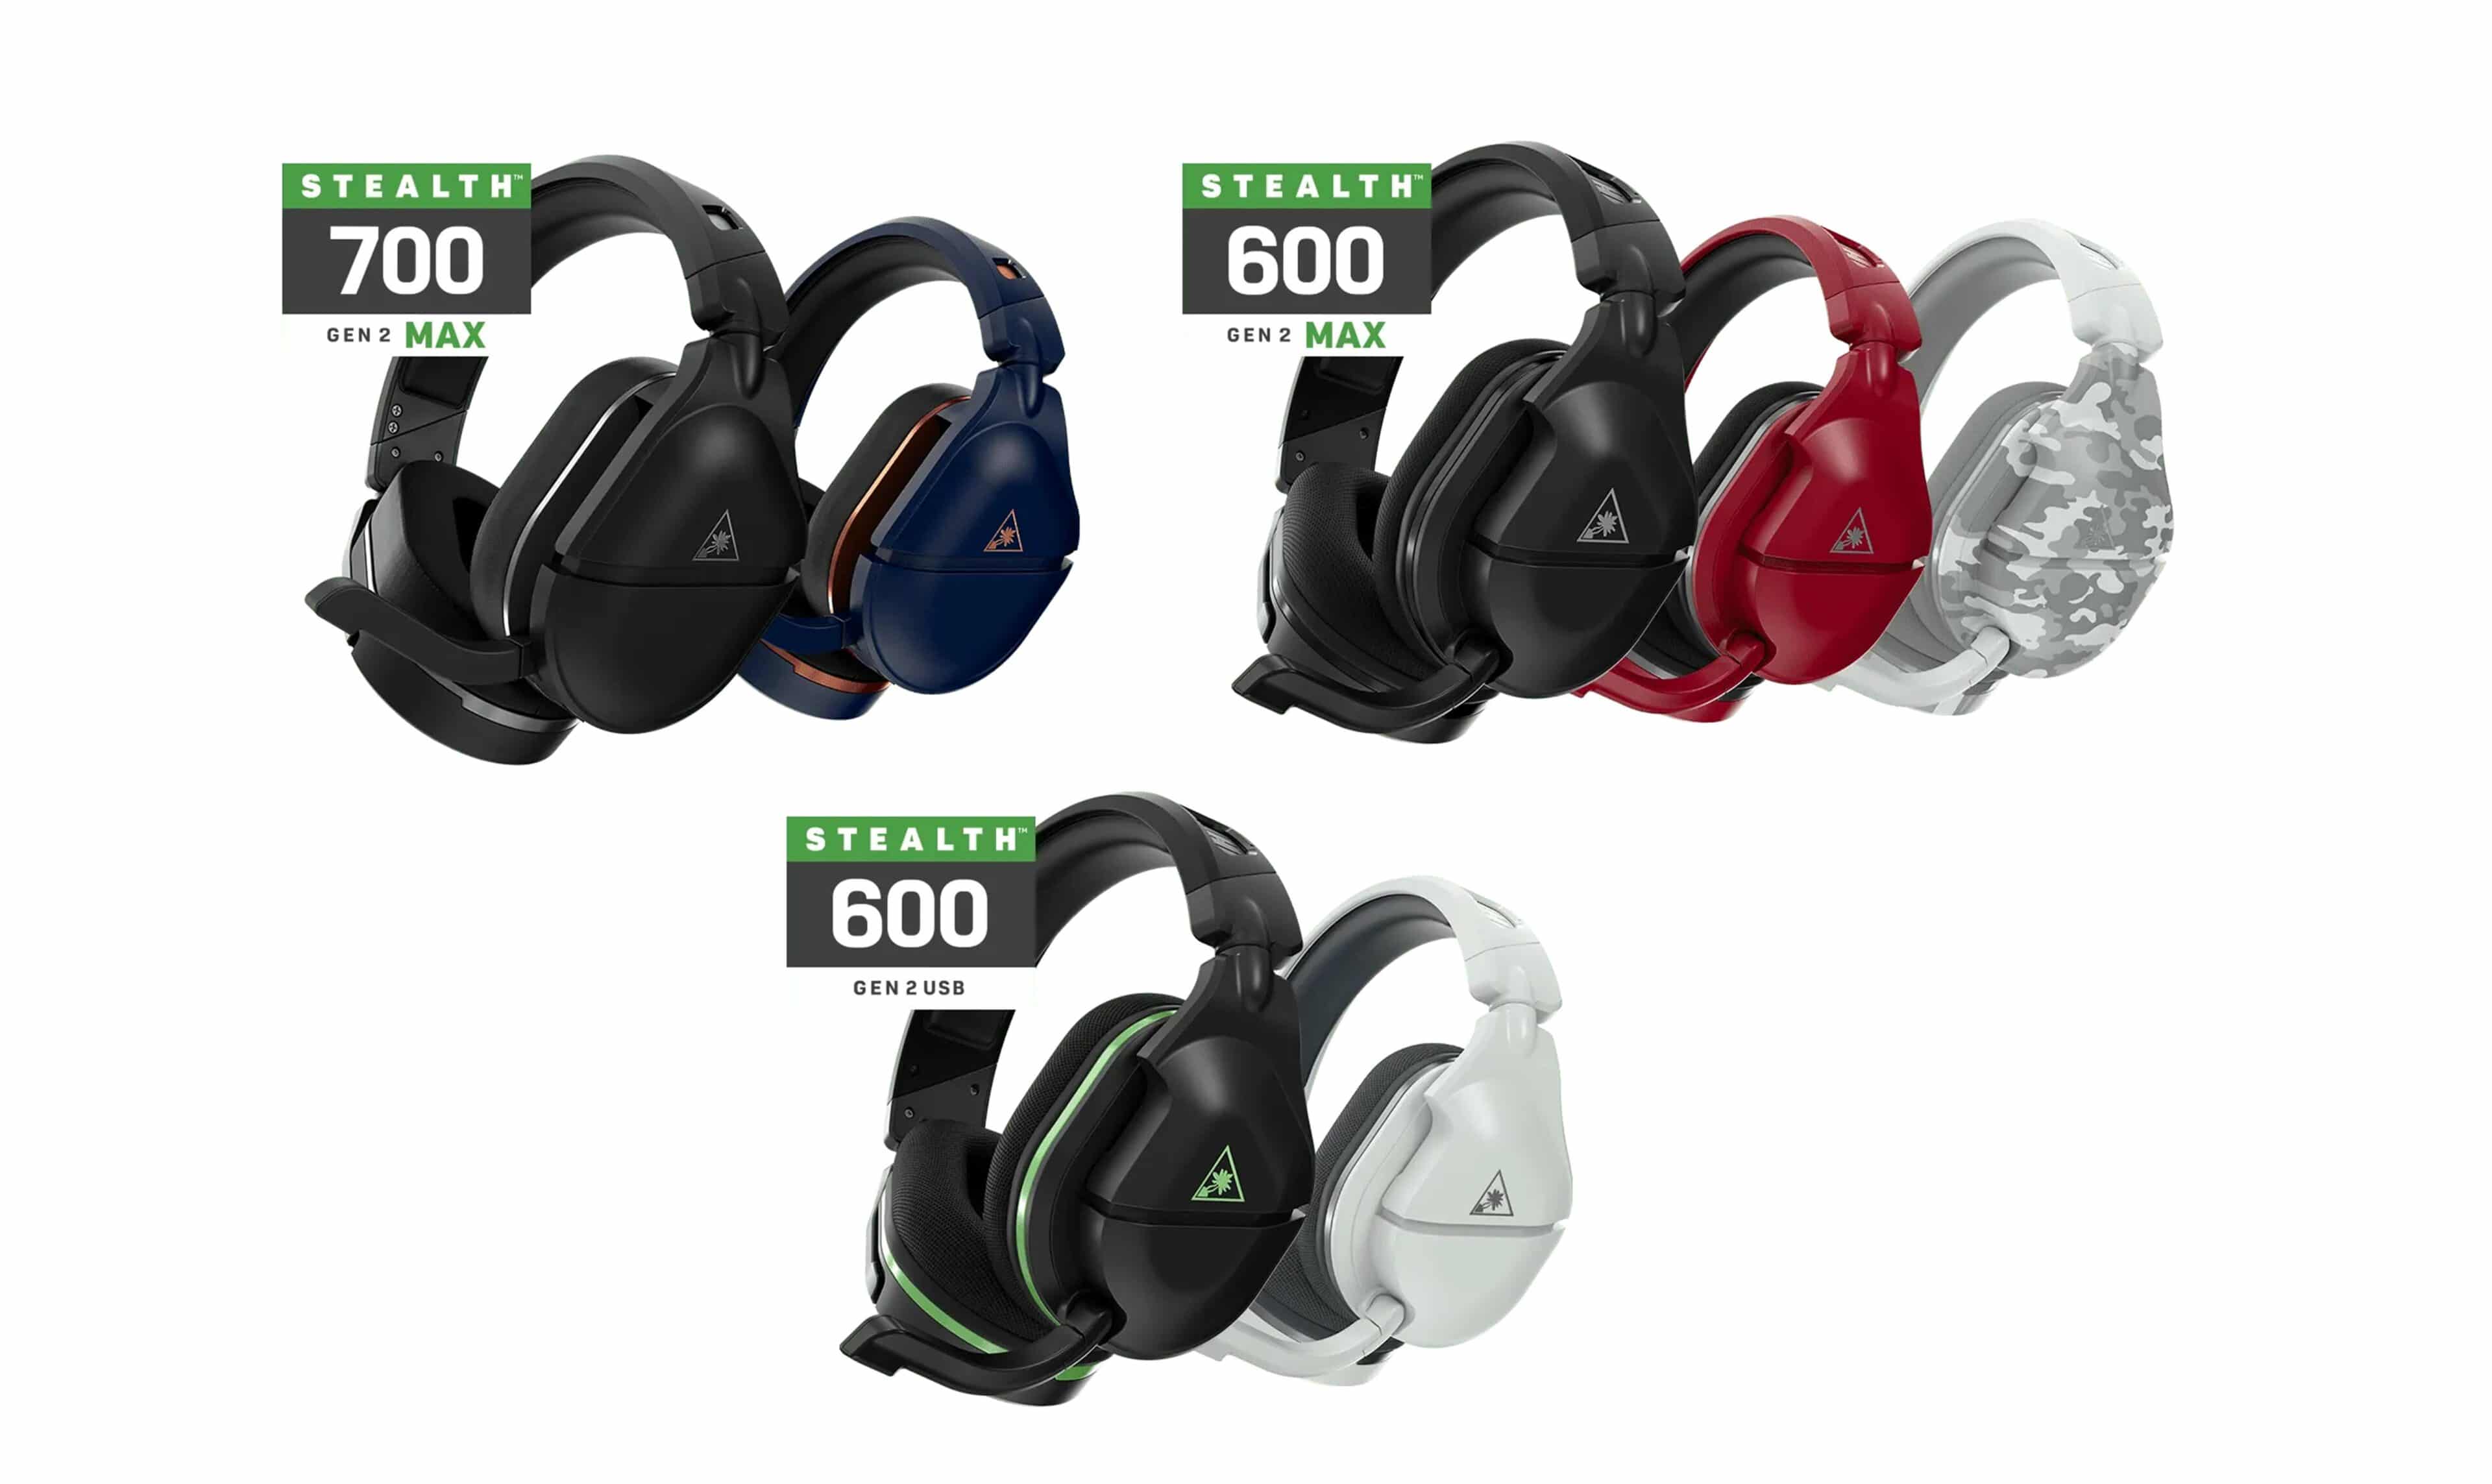 Los nuevos headsets Stealth 700 Gen 2 MAX, Stealth 600 Gen 2 MAX, y Stealth 600 gen 2 USB de Turtle Beach ya están disponibles , GamersRD